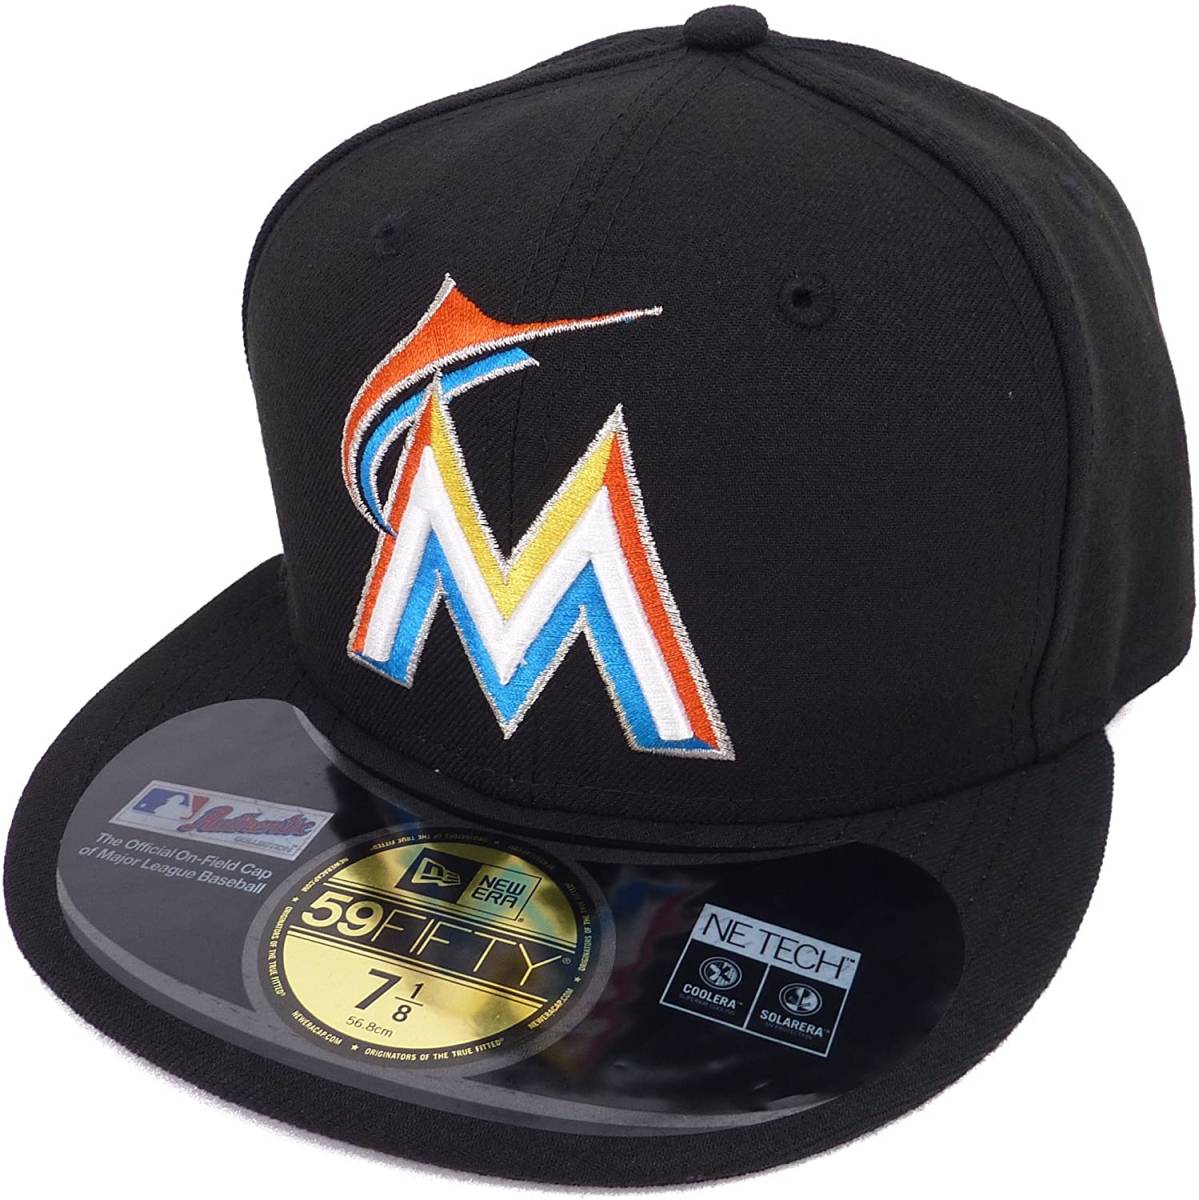 New Era ニューエラ MLB Miami Marlins マイアミ マーリンズ Mロゴ ベースボールキャップ 7 55.8cm [並行輸入品]